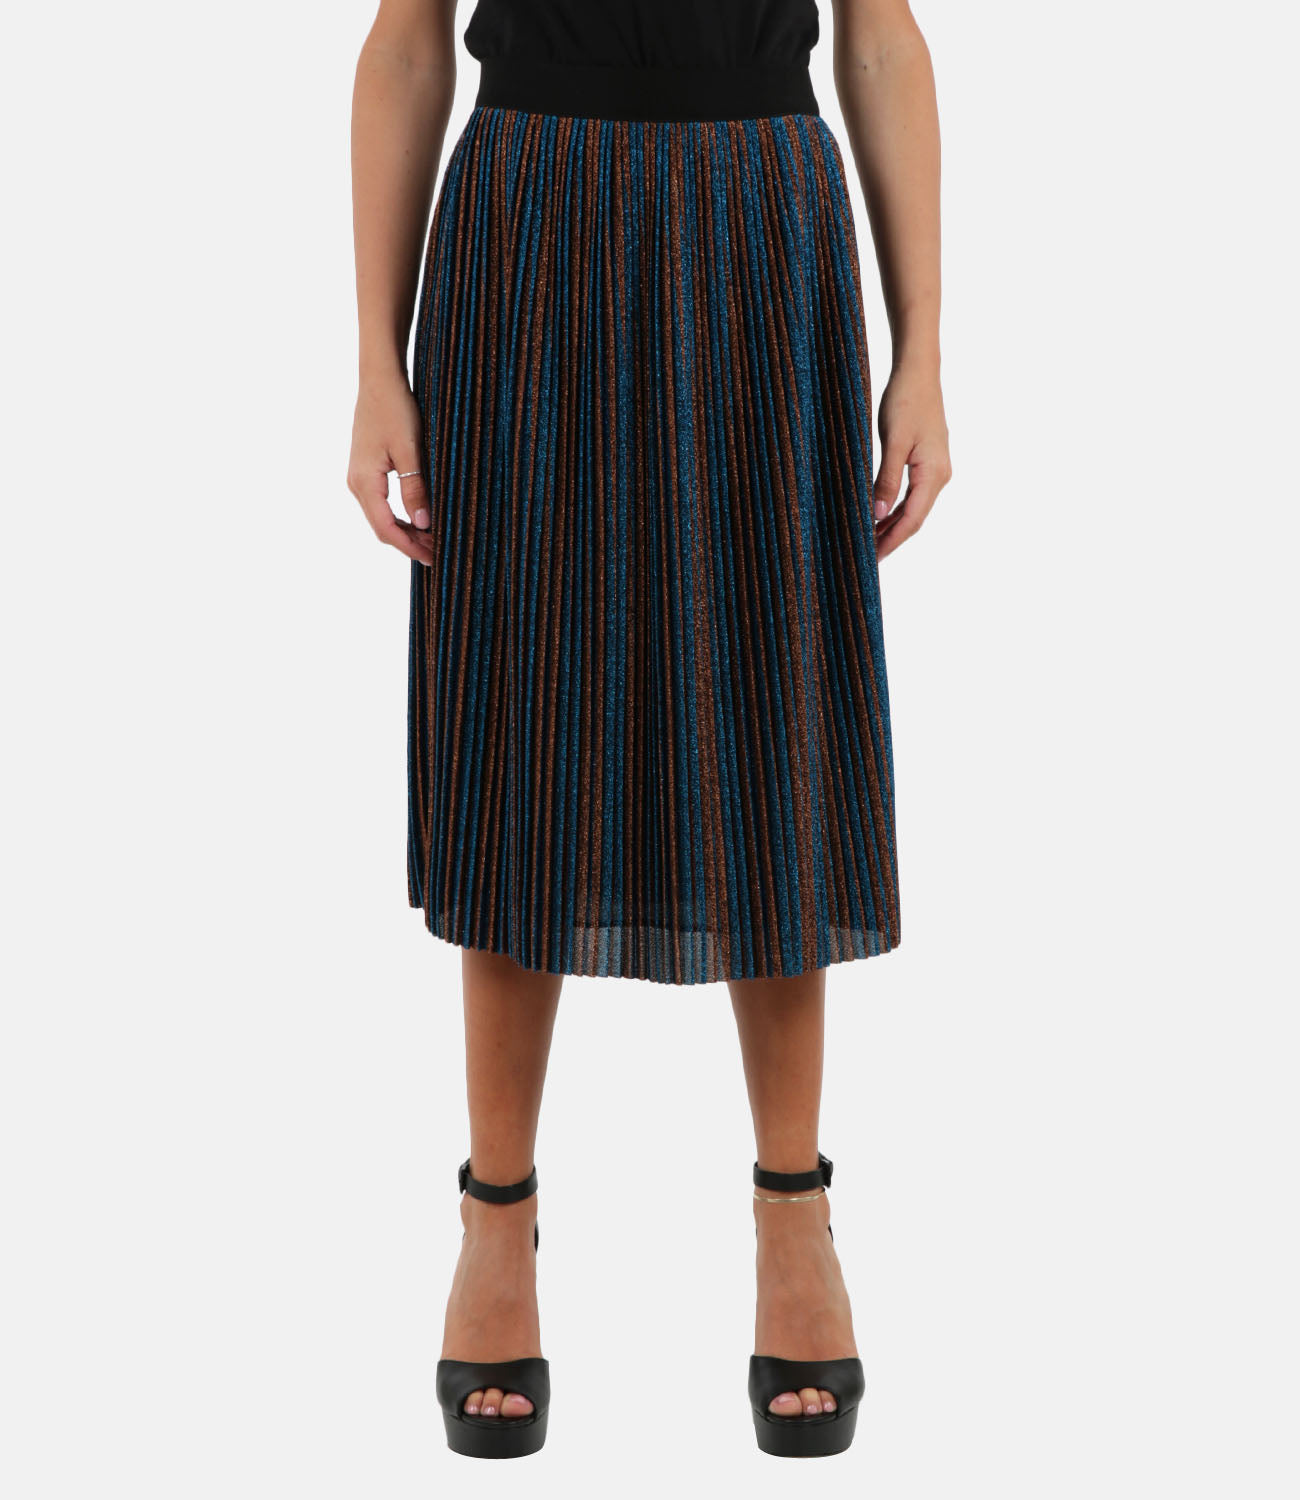 Amber skirt